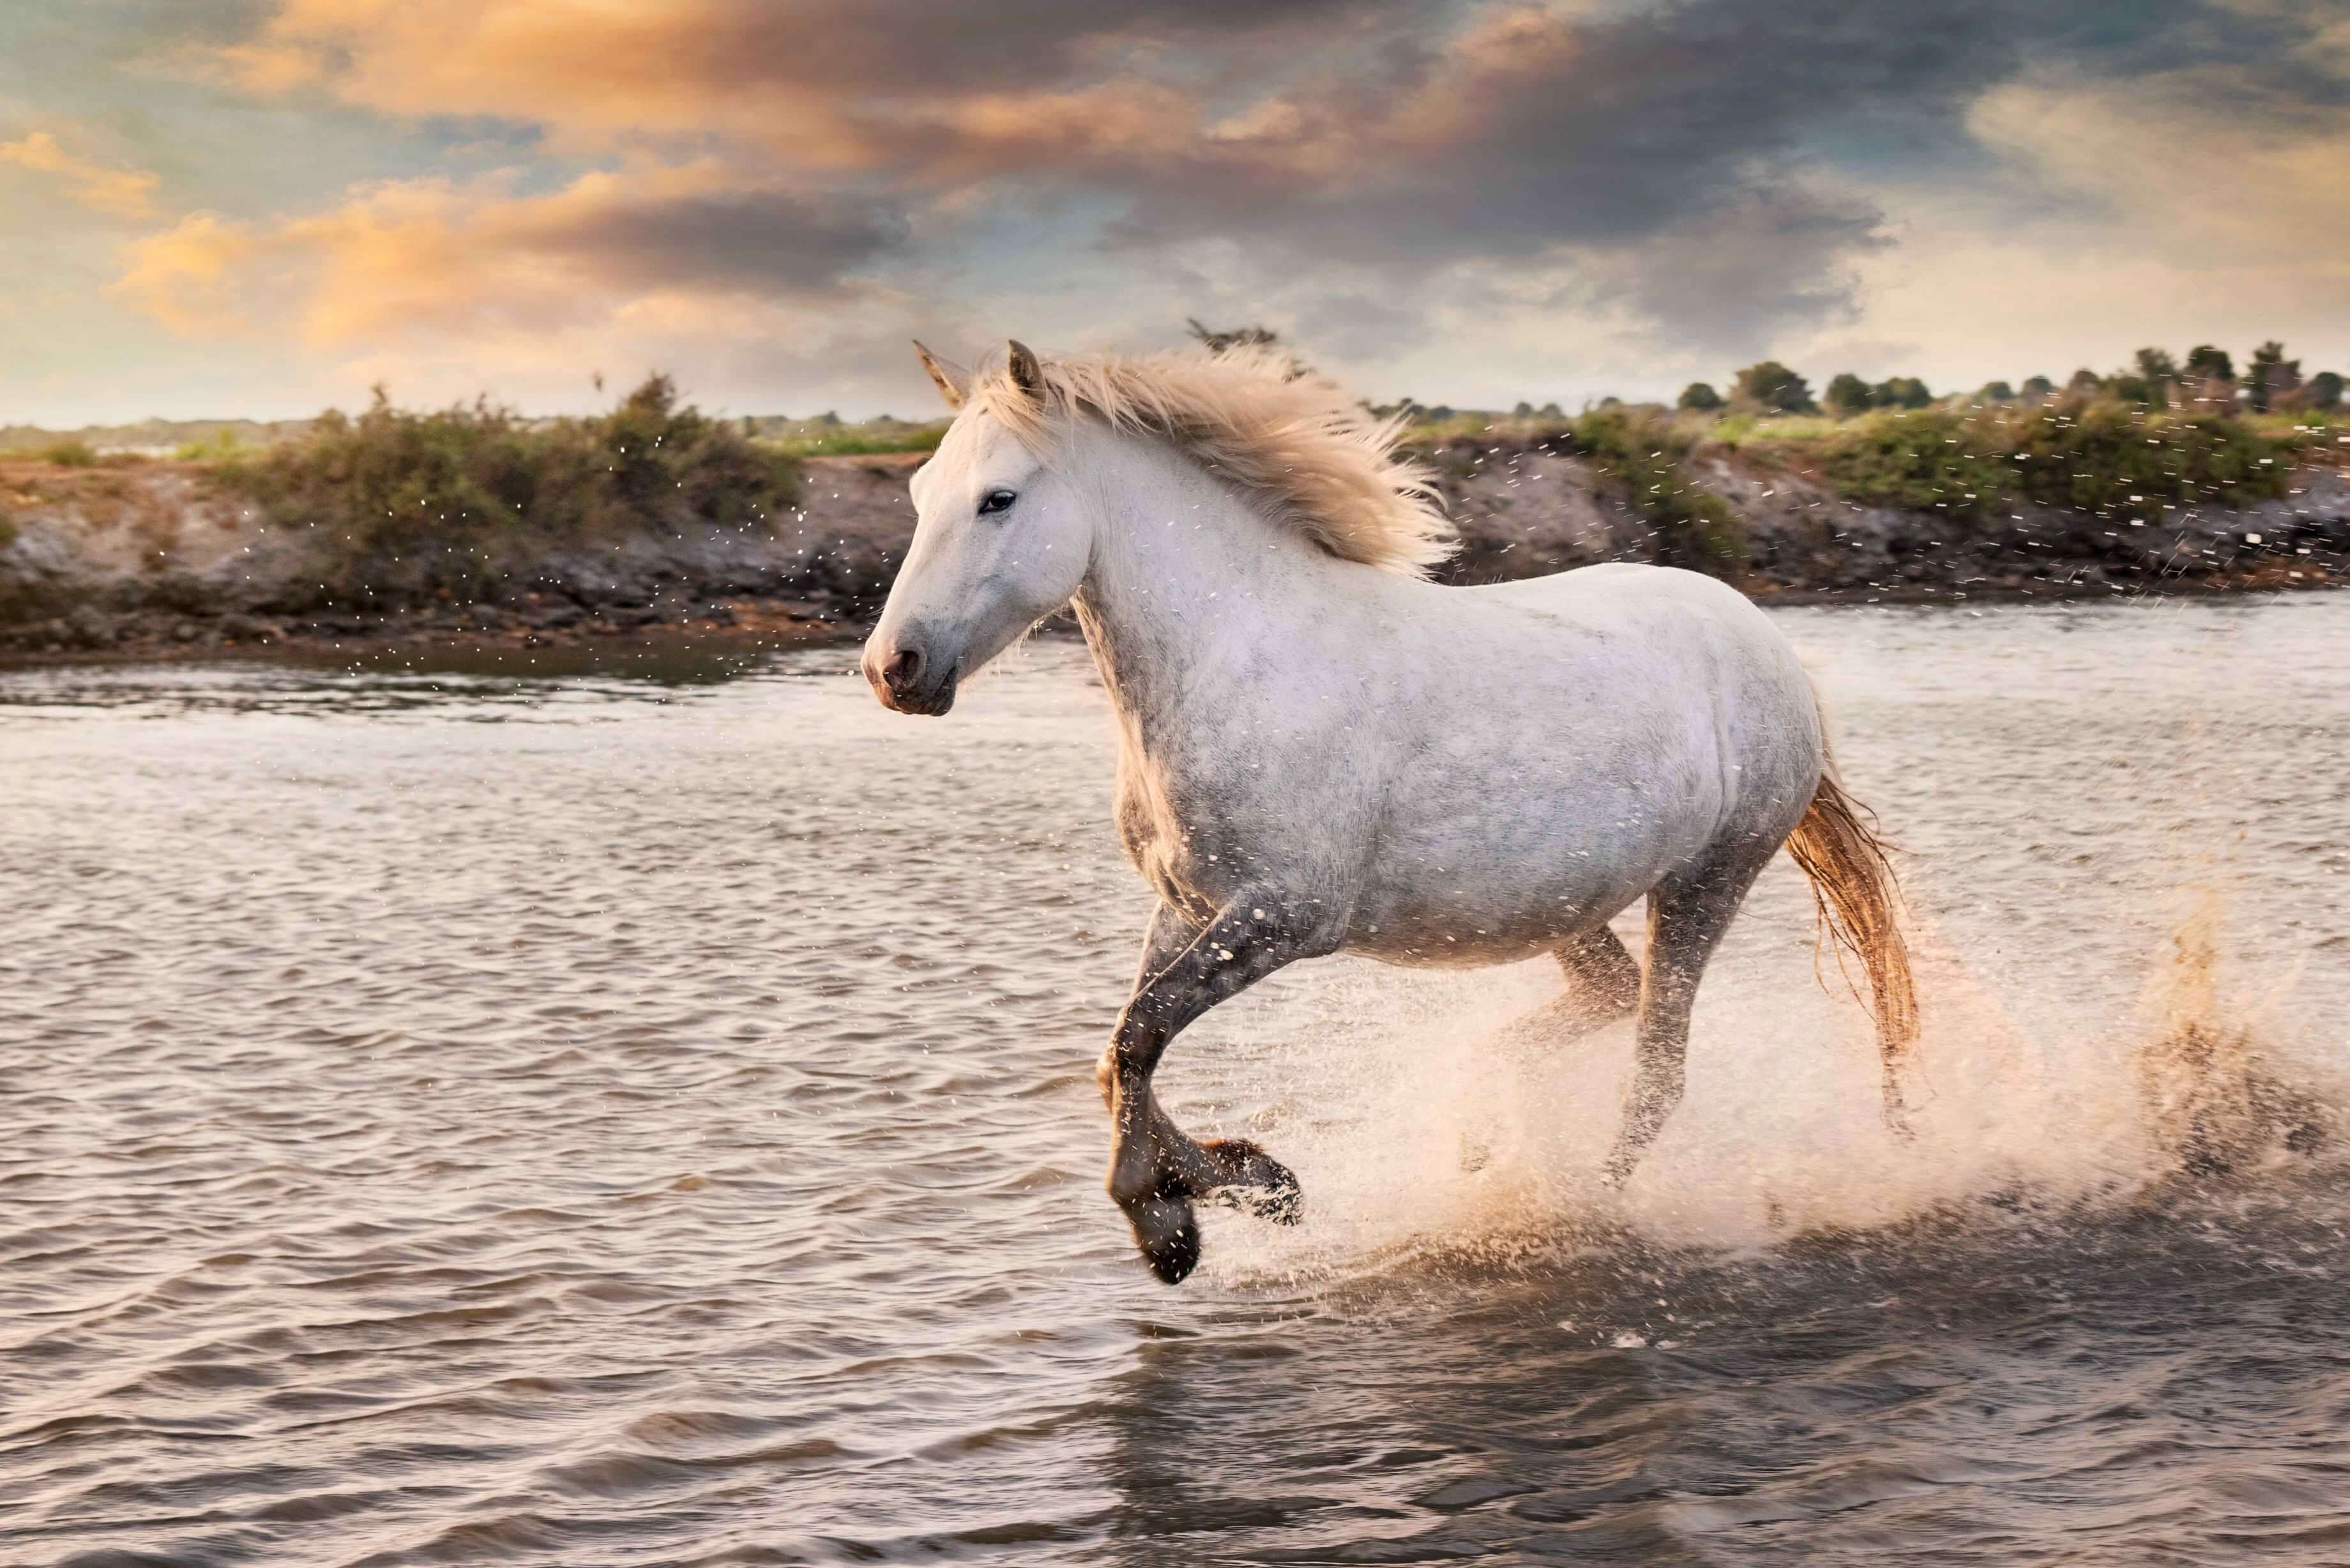 557-white-horses-are-running-water-beach.jpg